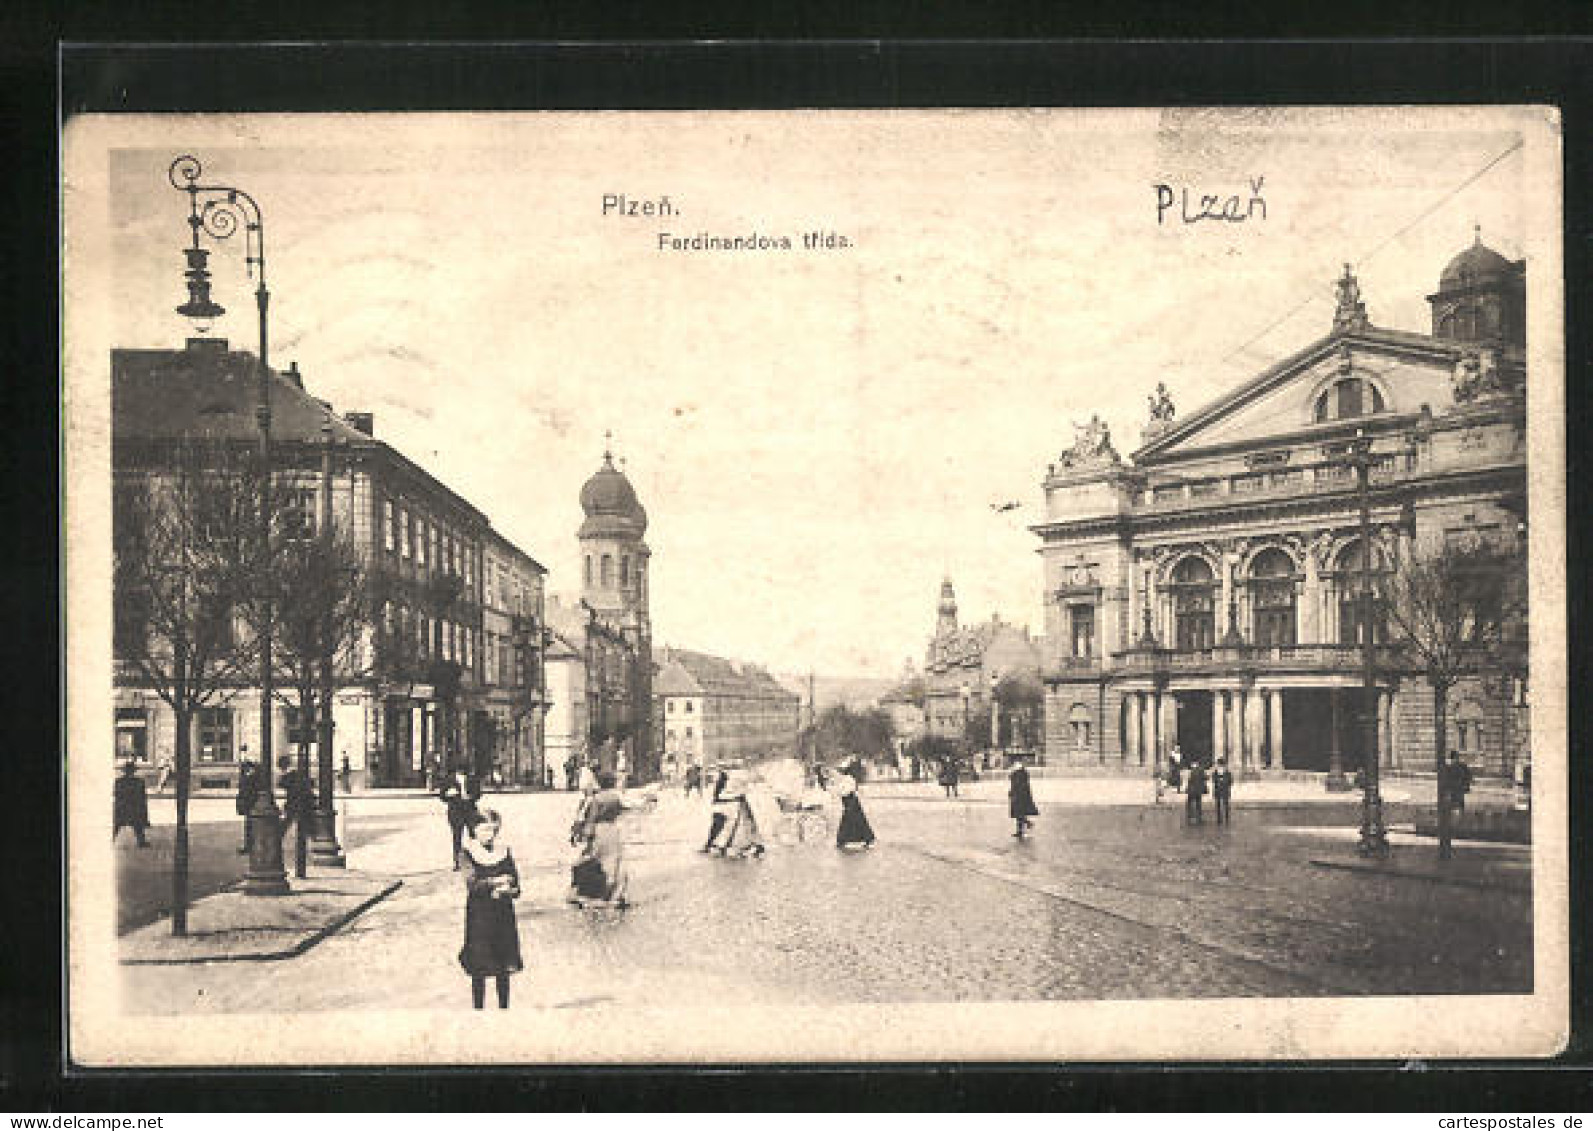 AK Pilsen, Synagoge An Der Hauptstrasse  - Tchéquie